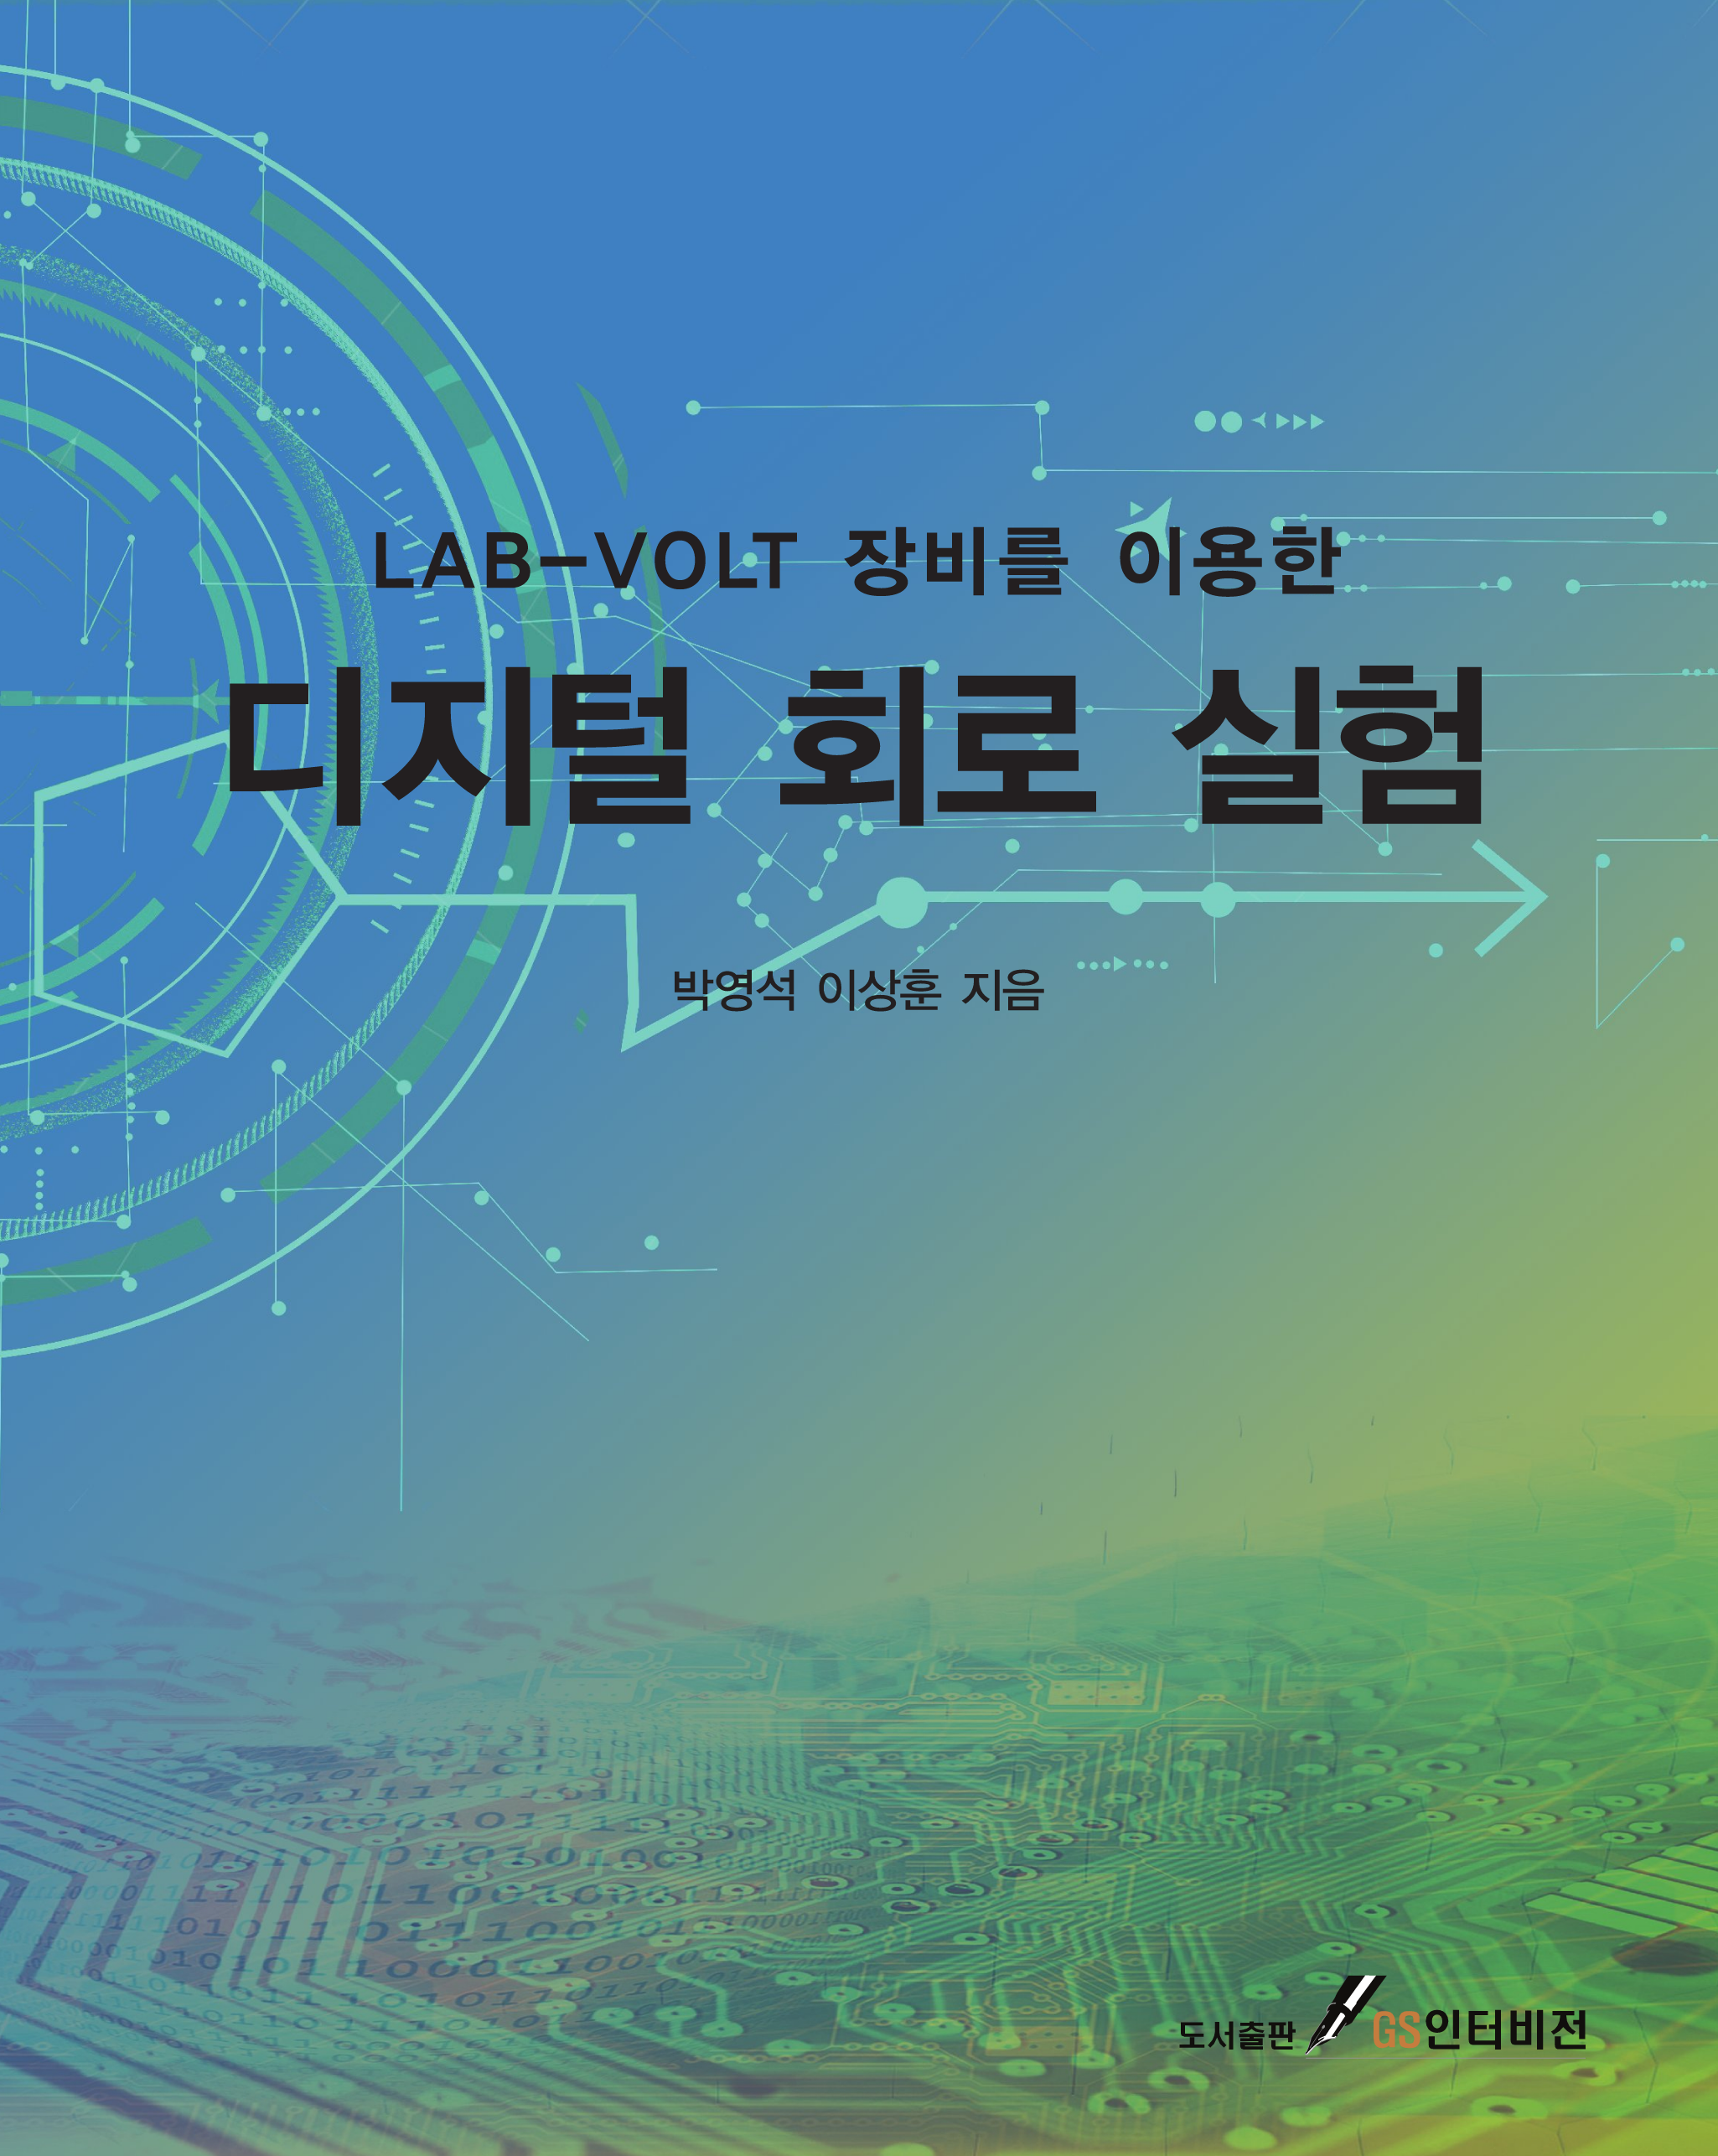 LAB-VOLT 장비를 이용한 디지털 회로 실험